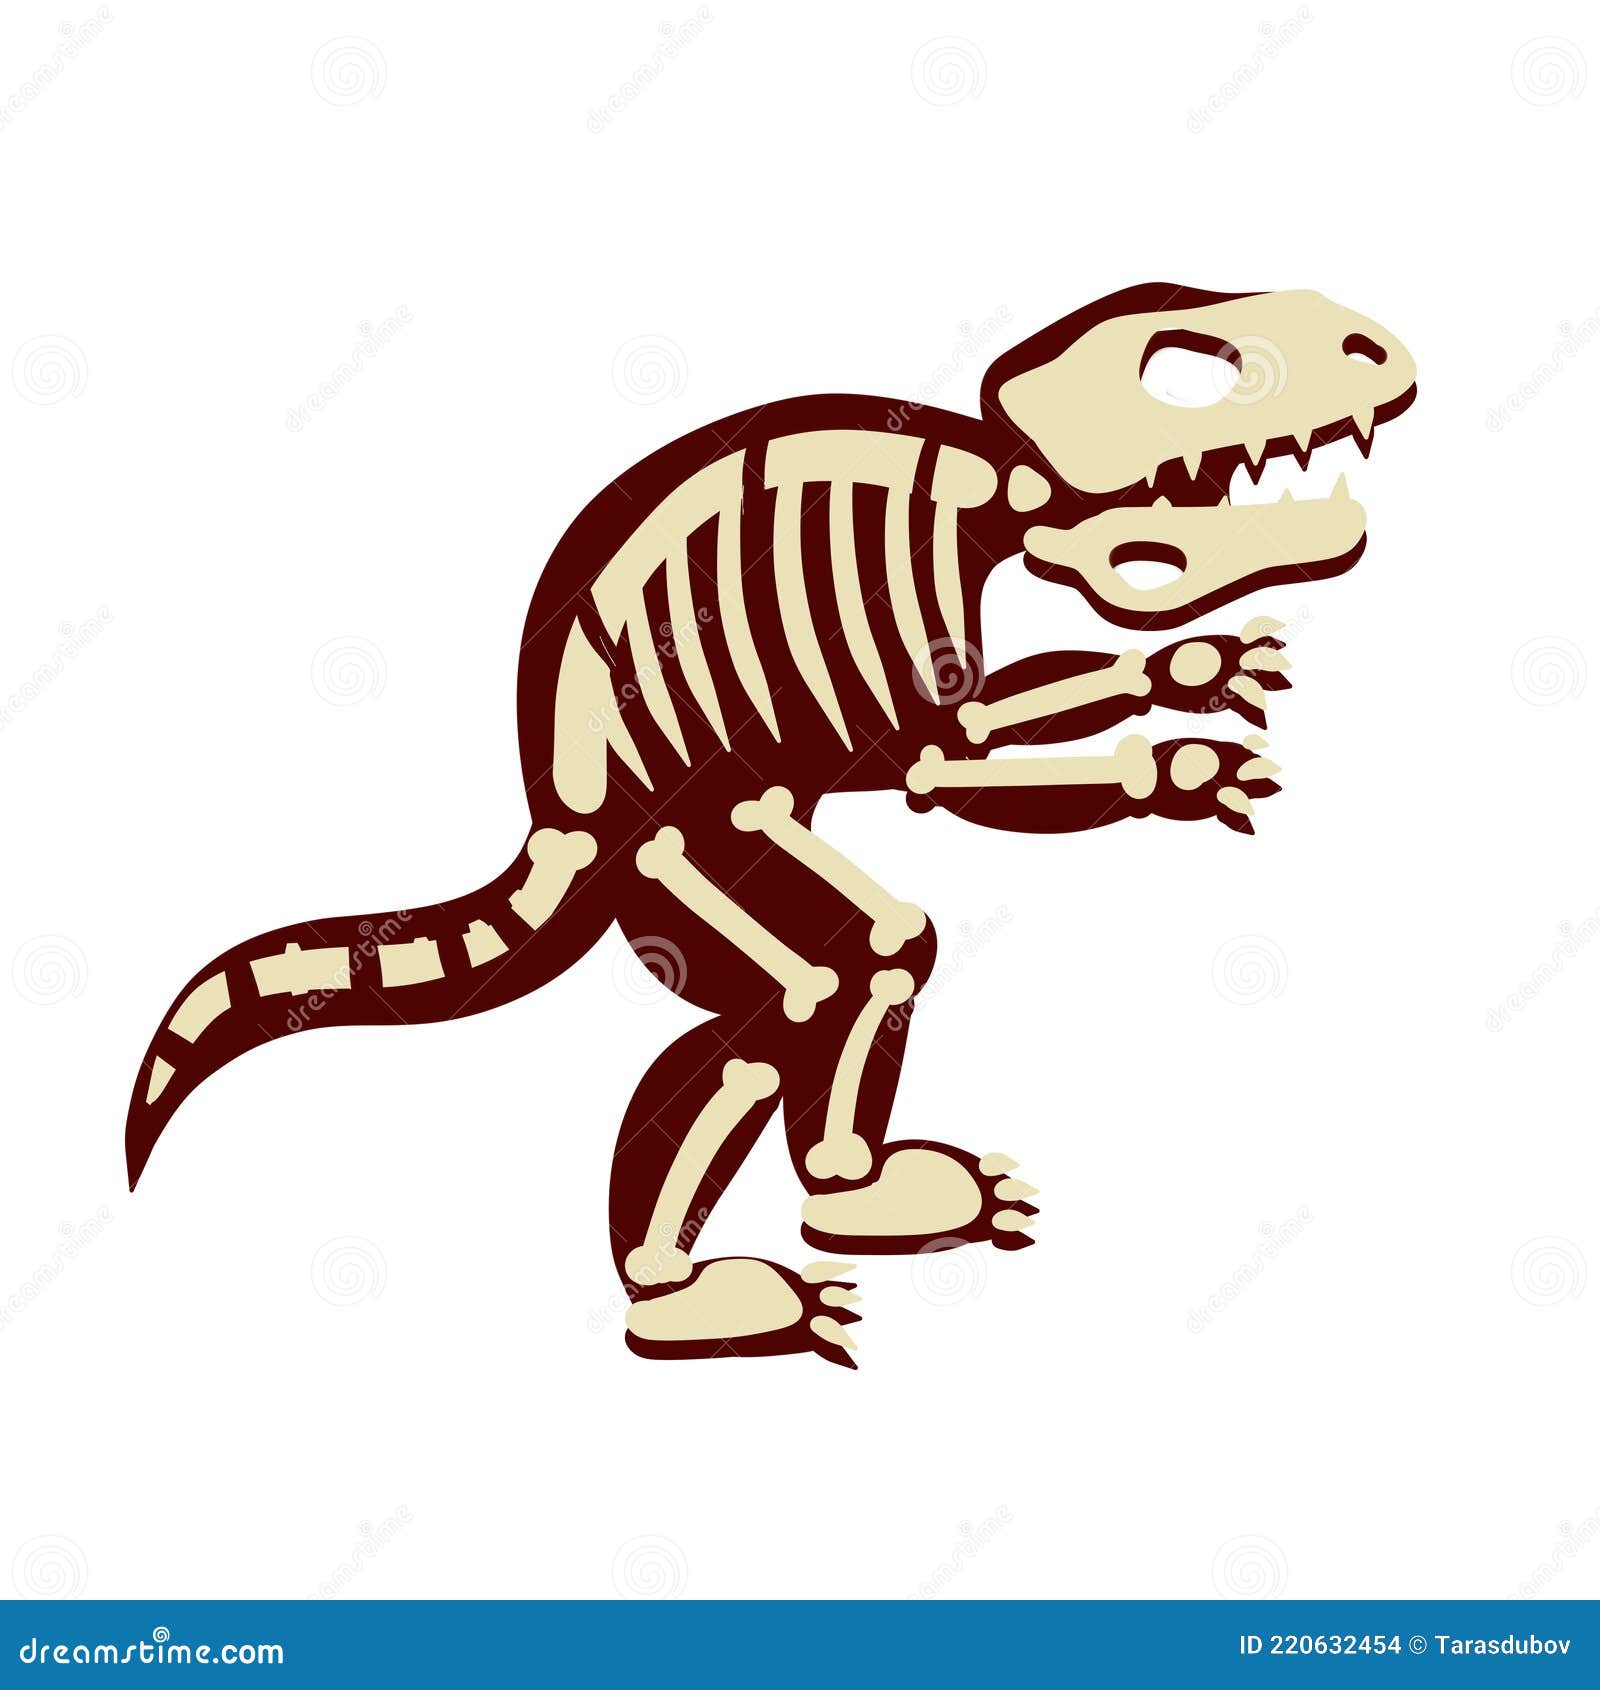 Como desenhar um esqueleto de dinossauro (T-Rex) - How to draw a